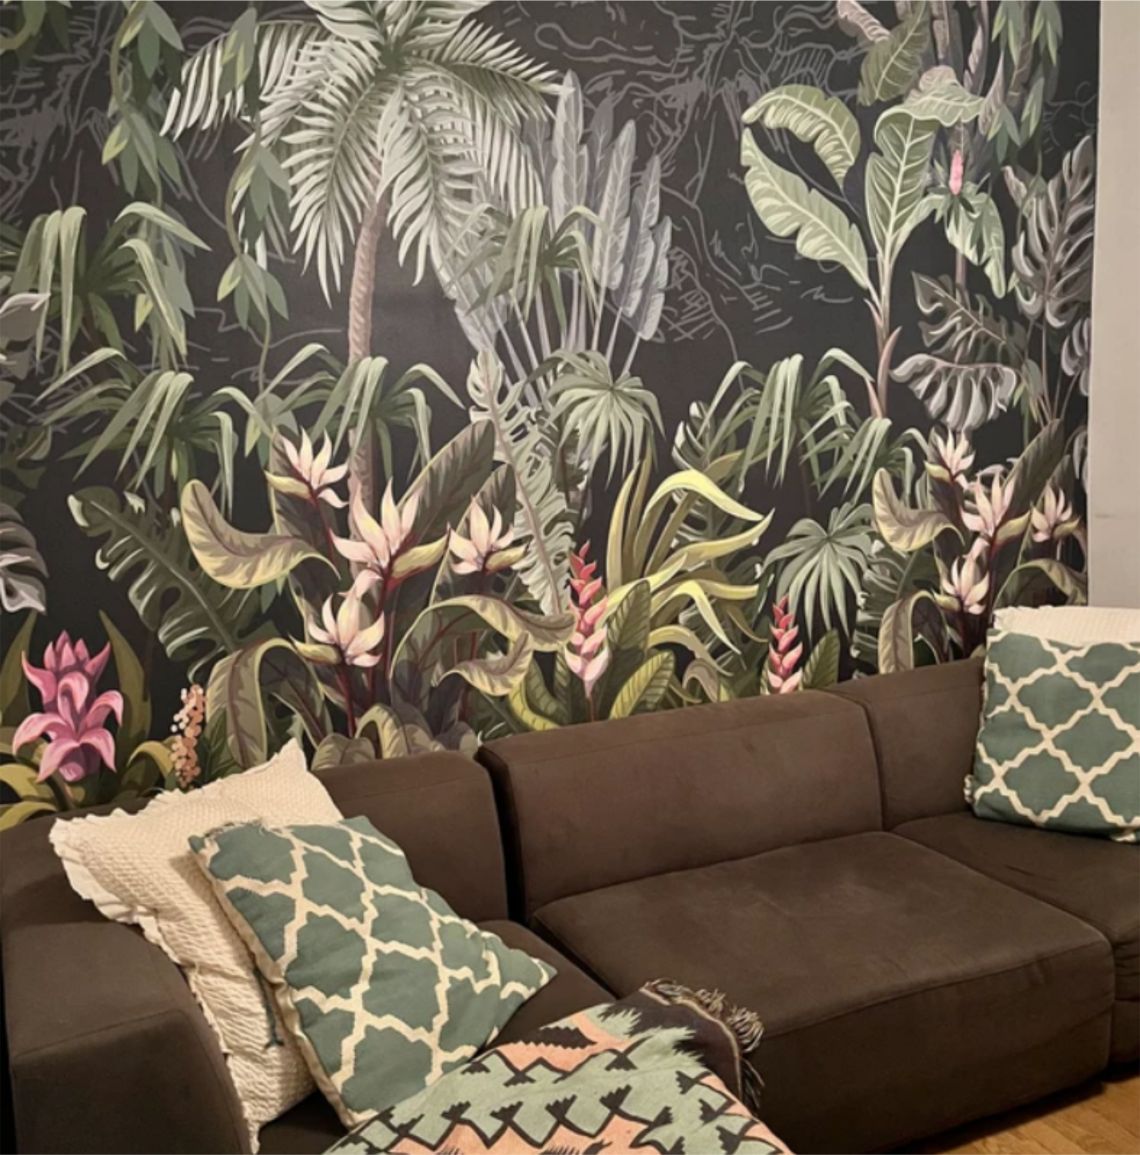 Jungle Wallpaper